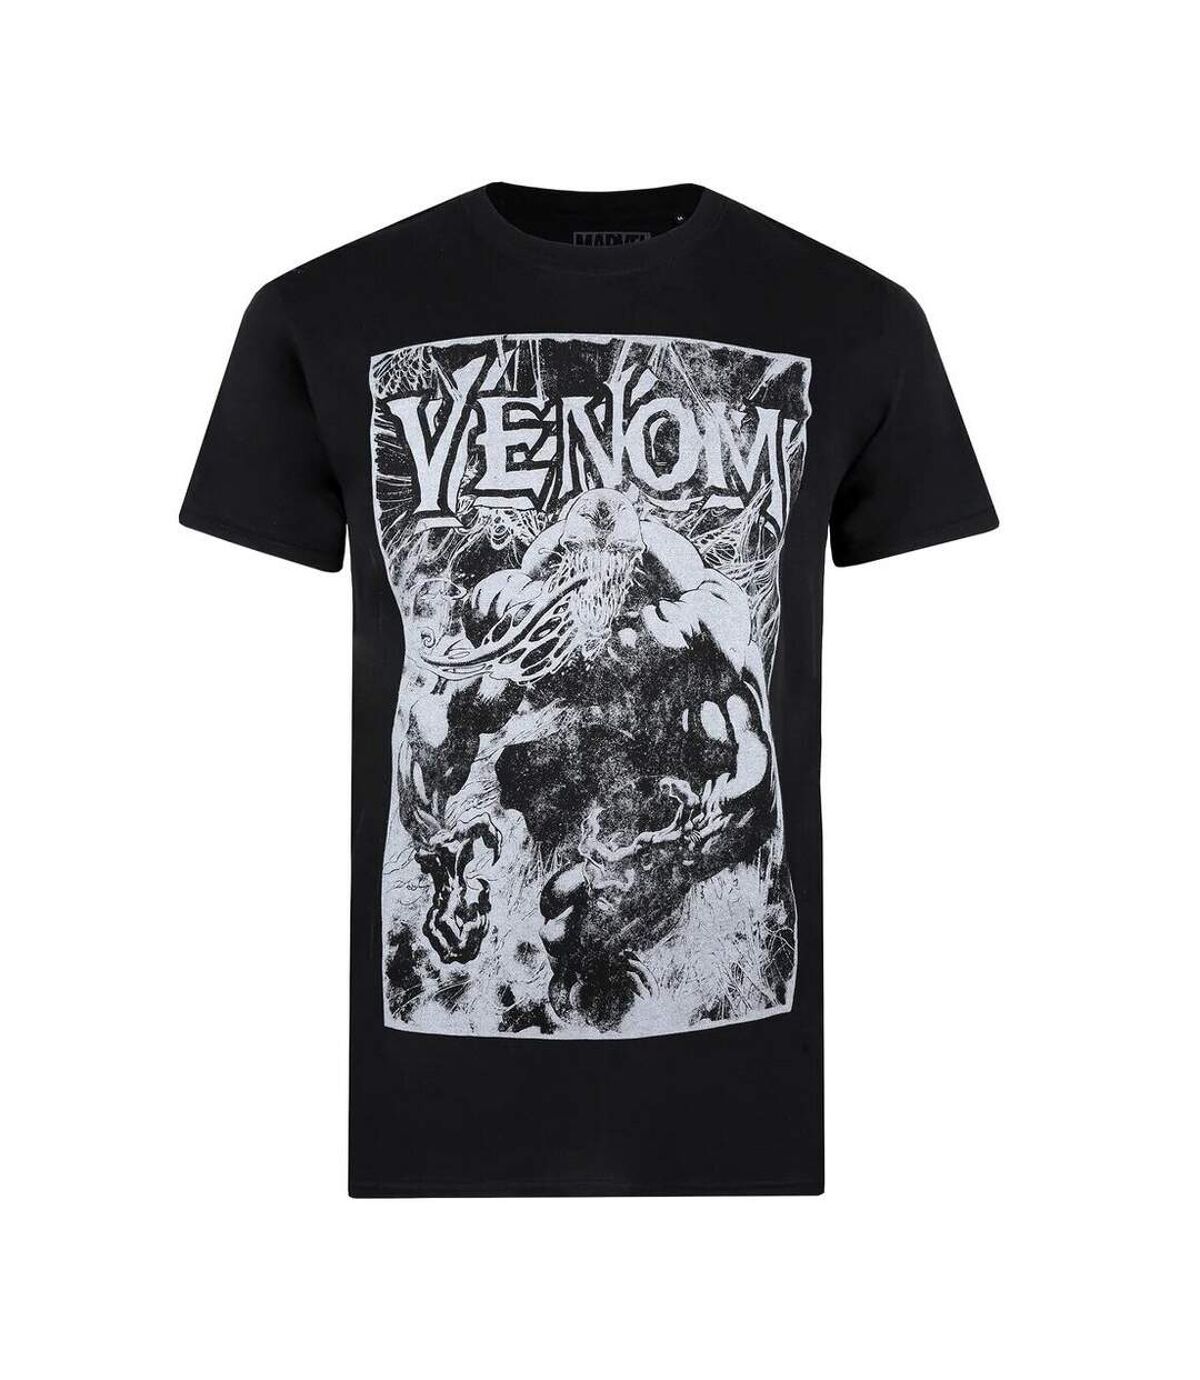 Venom - T-shirt - Homme (Noir / Blanc) - UTTV746